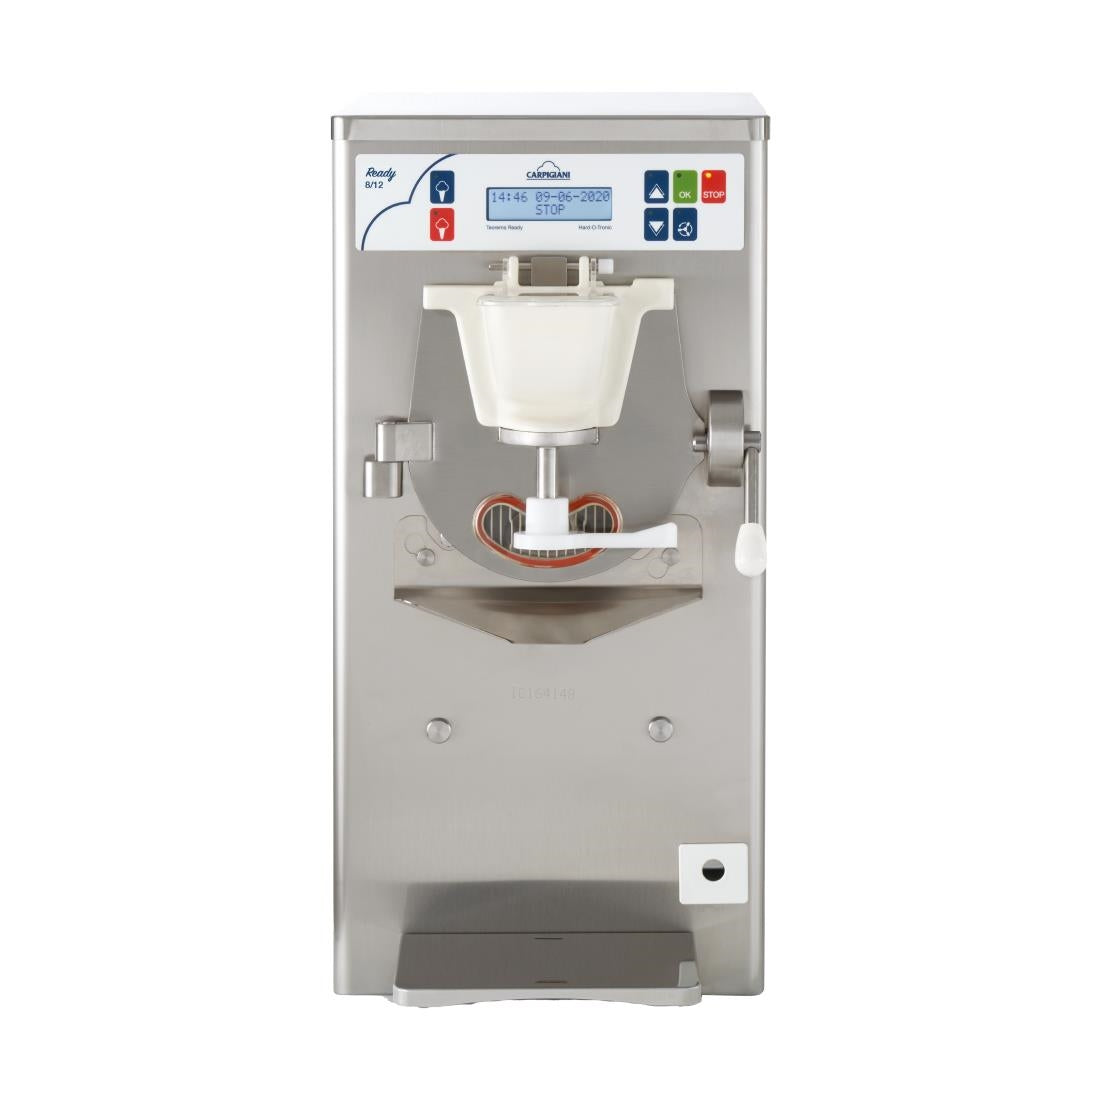 CX496 Carpigiani Self-Pasteurising Gelato Combi Ice Cream Machine Ready 8 12 JD Catering Equipment Solutions Ltd